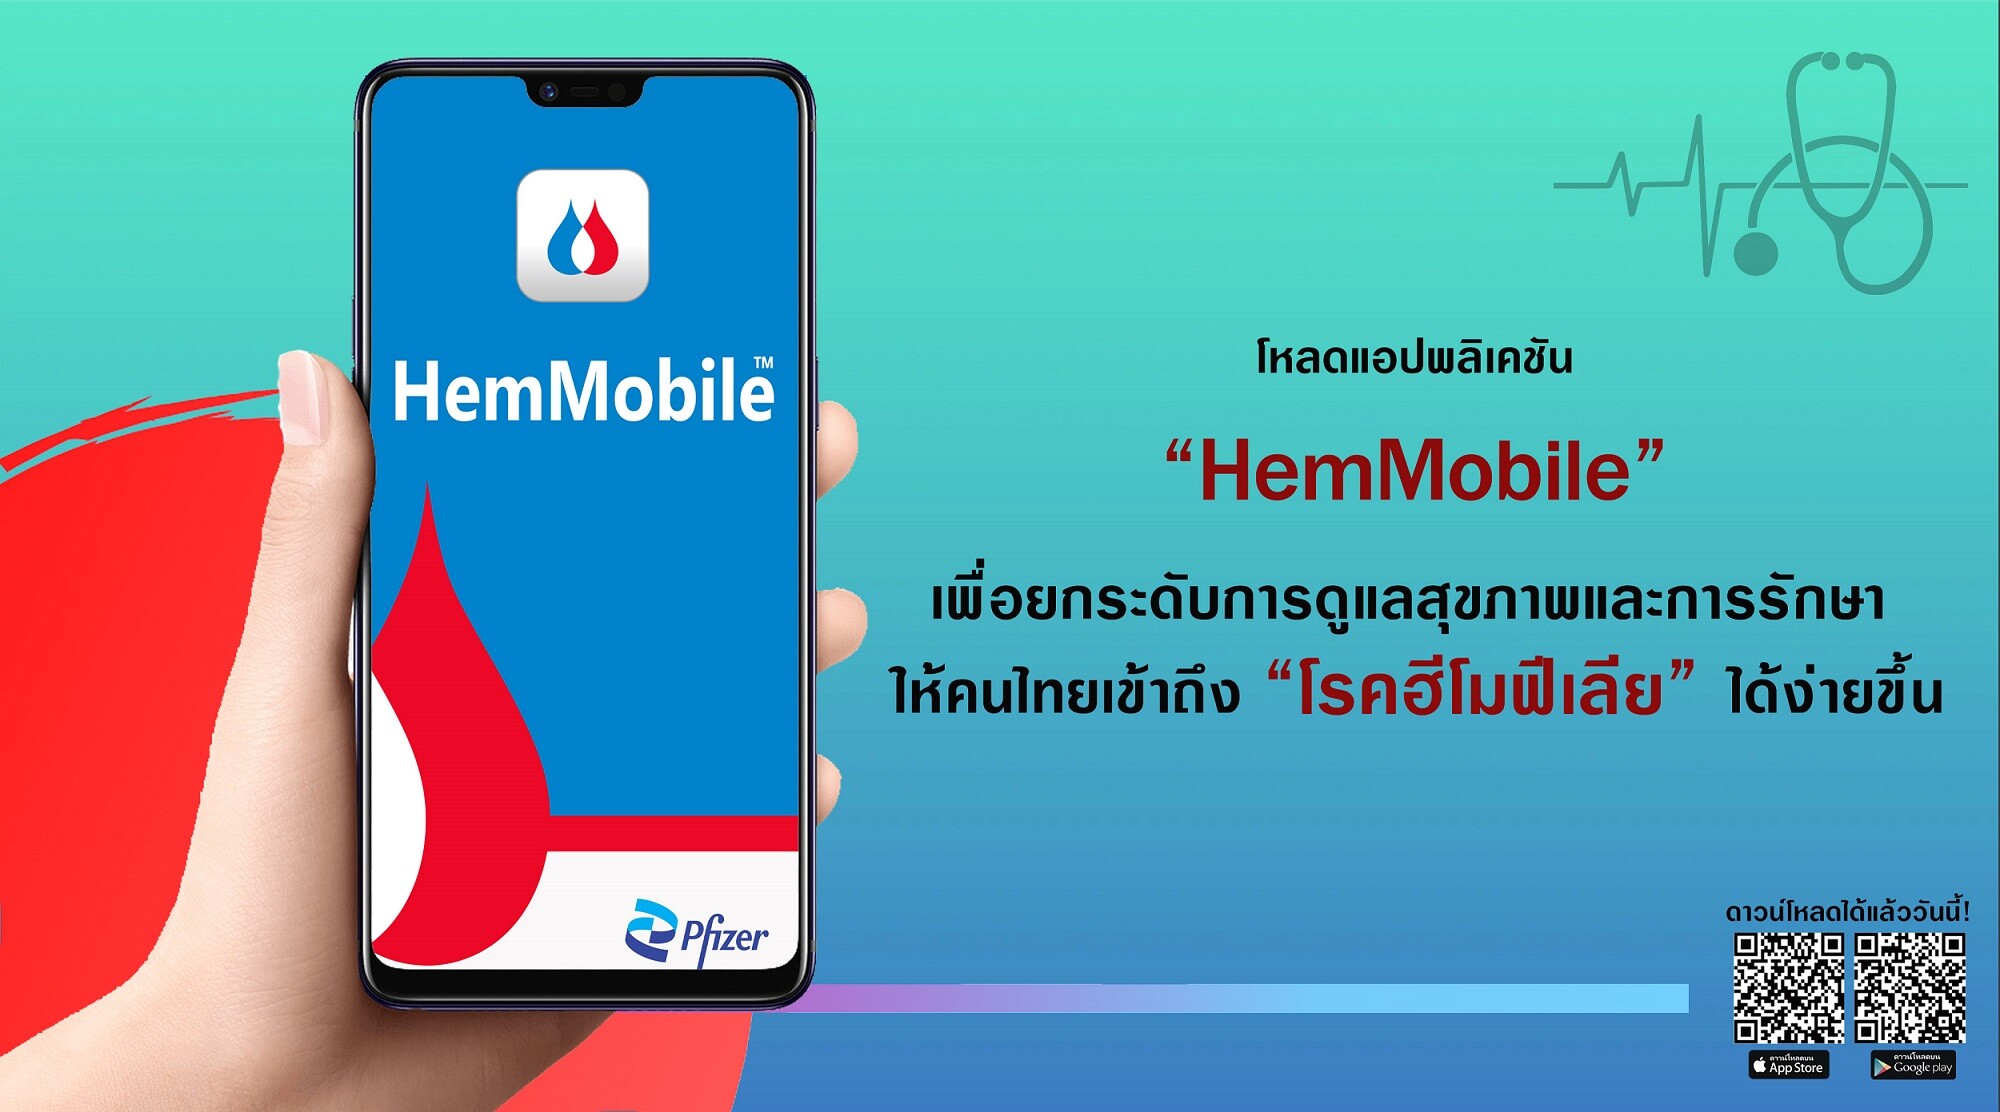 เปิดตัวแอปพลิเคชัน "HemMobile(TM)" ยกระดับการดูแลสุขภาพและการรักษา ให้คนไทยเข้าถึง "โรคฮีโมฟีเลีย" ได้ง่ายขึ้น